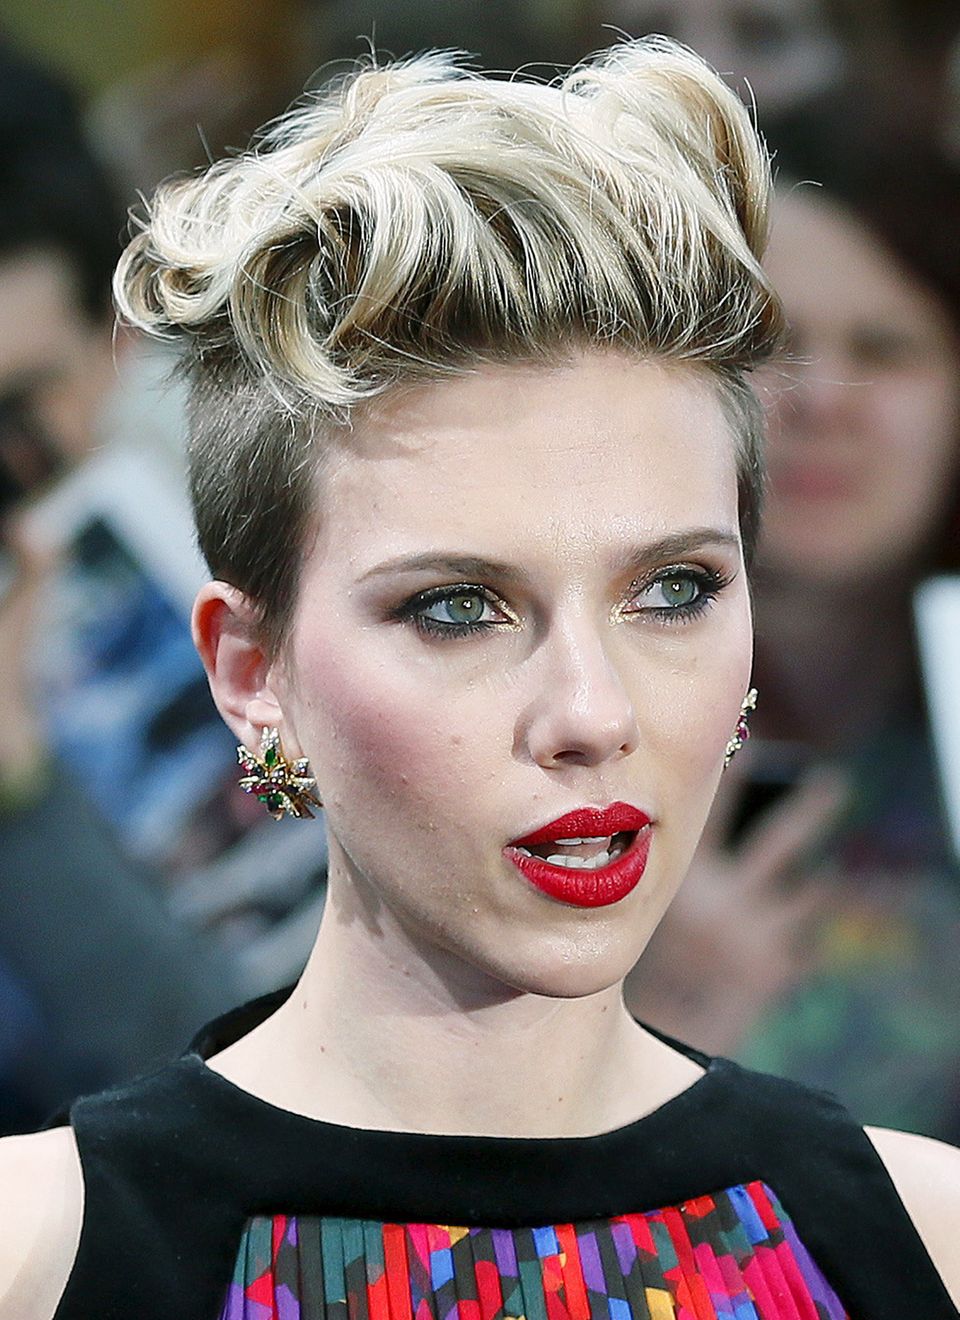 Die Vielseitigkeit von Kurzhaarschnitten demonstriert Scarlett Johansson bei der "Avengers"-Premiere in London mit dieser locker eingedrehten, schwungvollen Frisur.